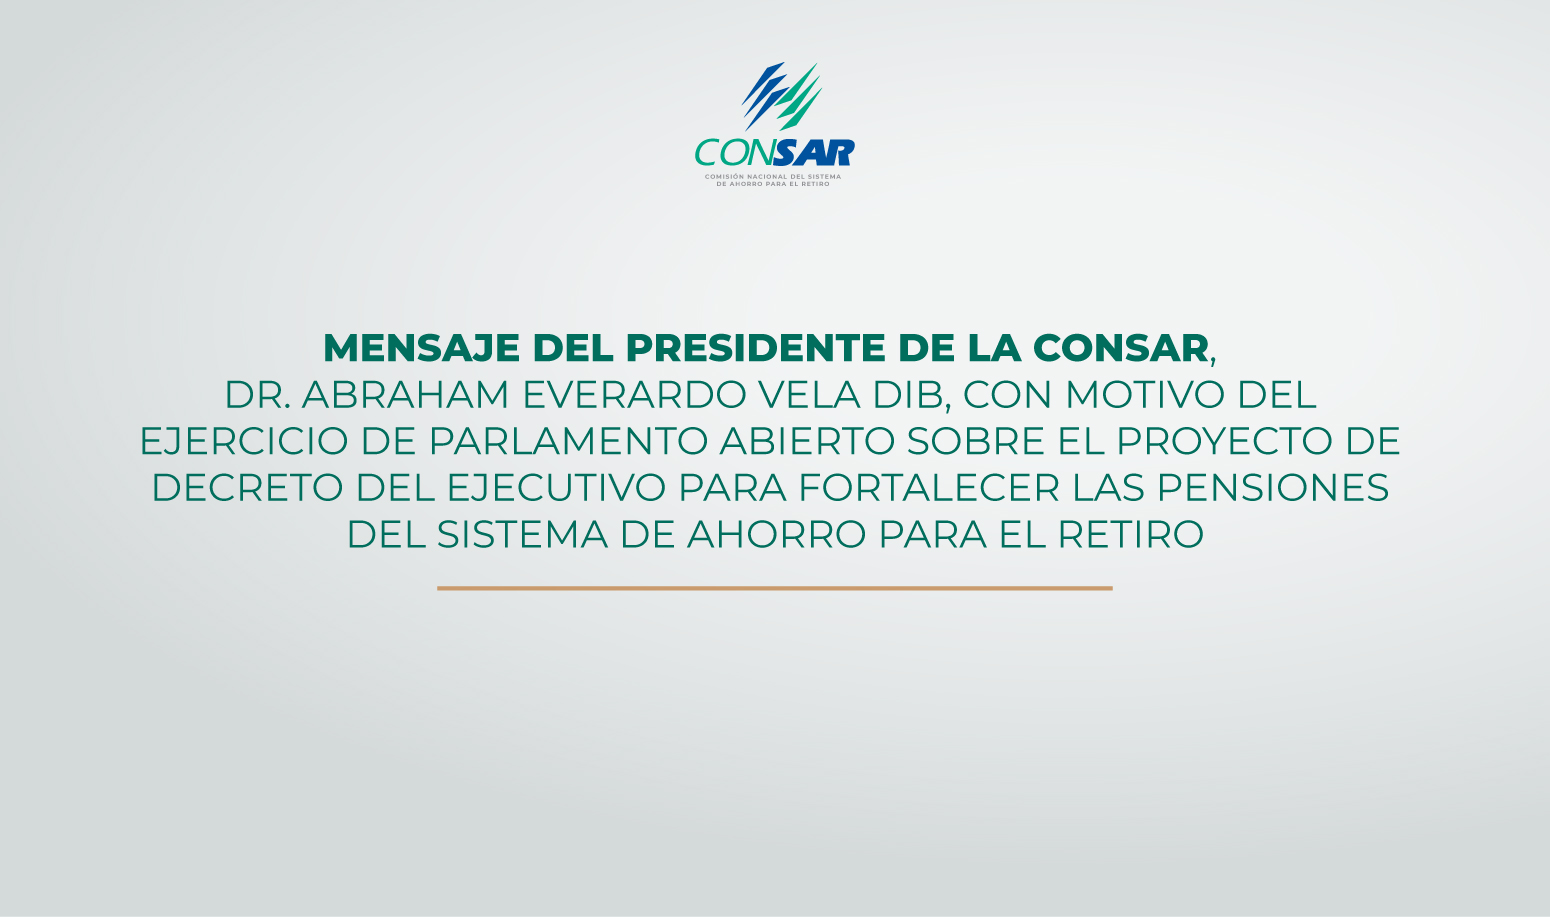 Mensaje del Presidente de la CONSAR en el Parlamento Abierto de la H. Cámara de Diputados.